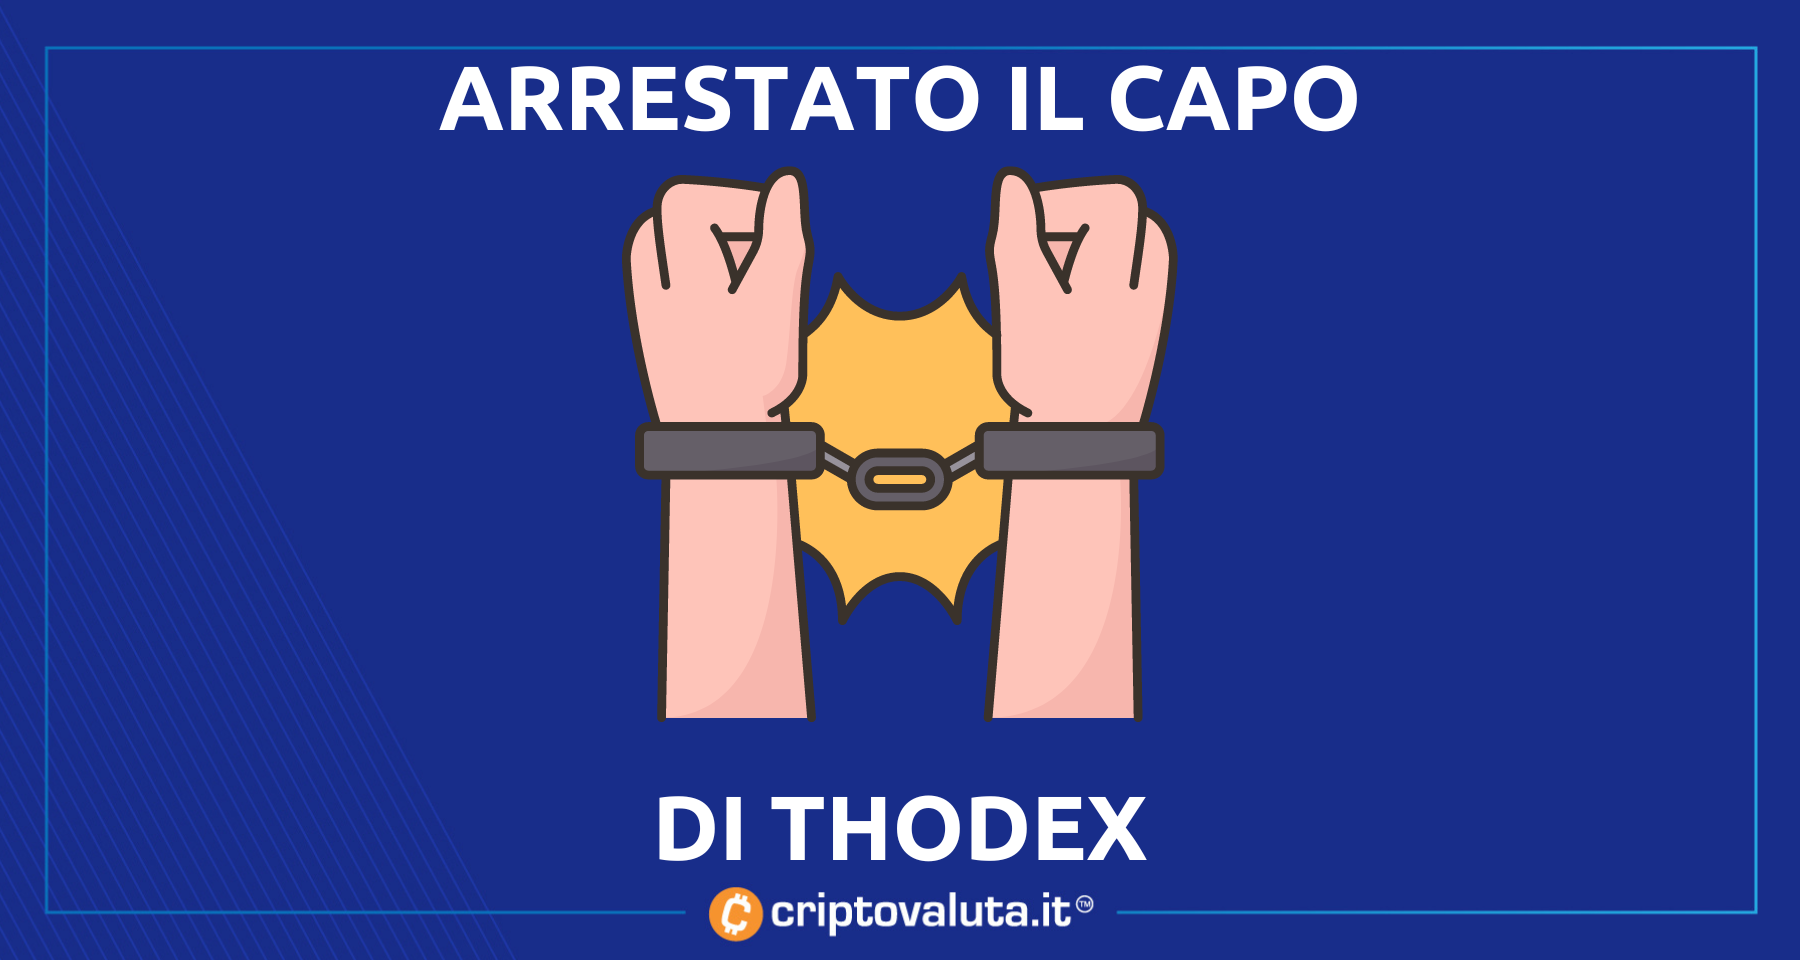 Finita la fuga del capo di Thodex | Arrestato in Albania Fatih Özer